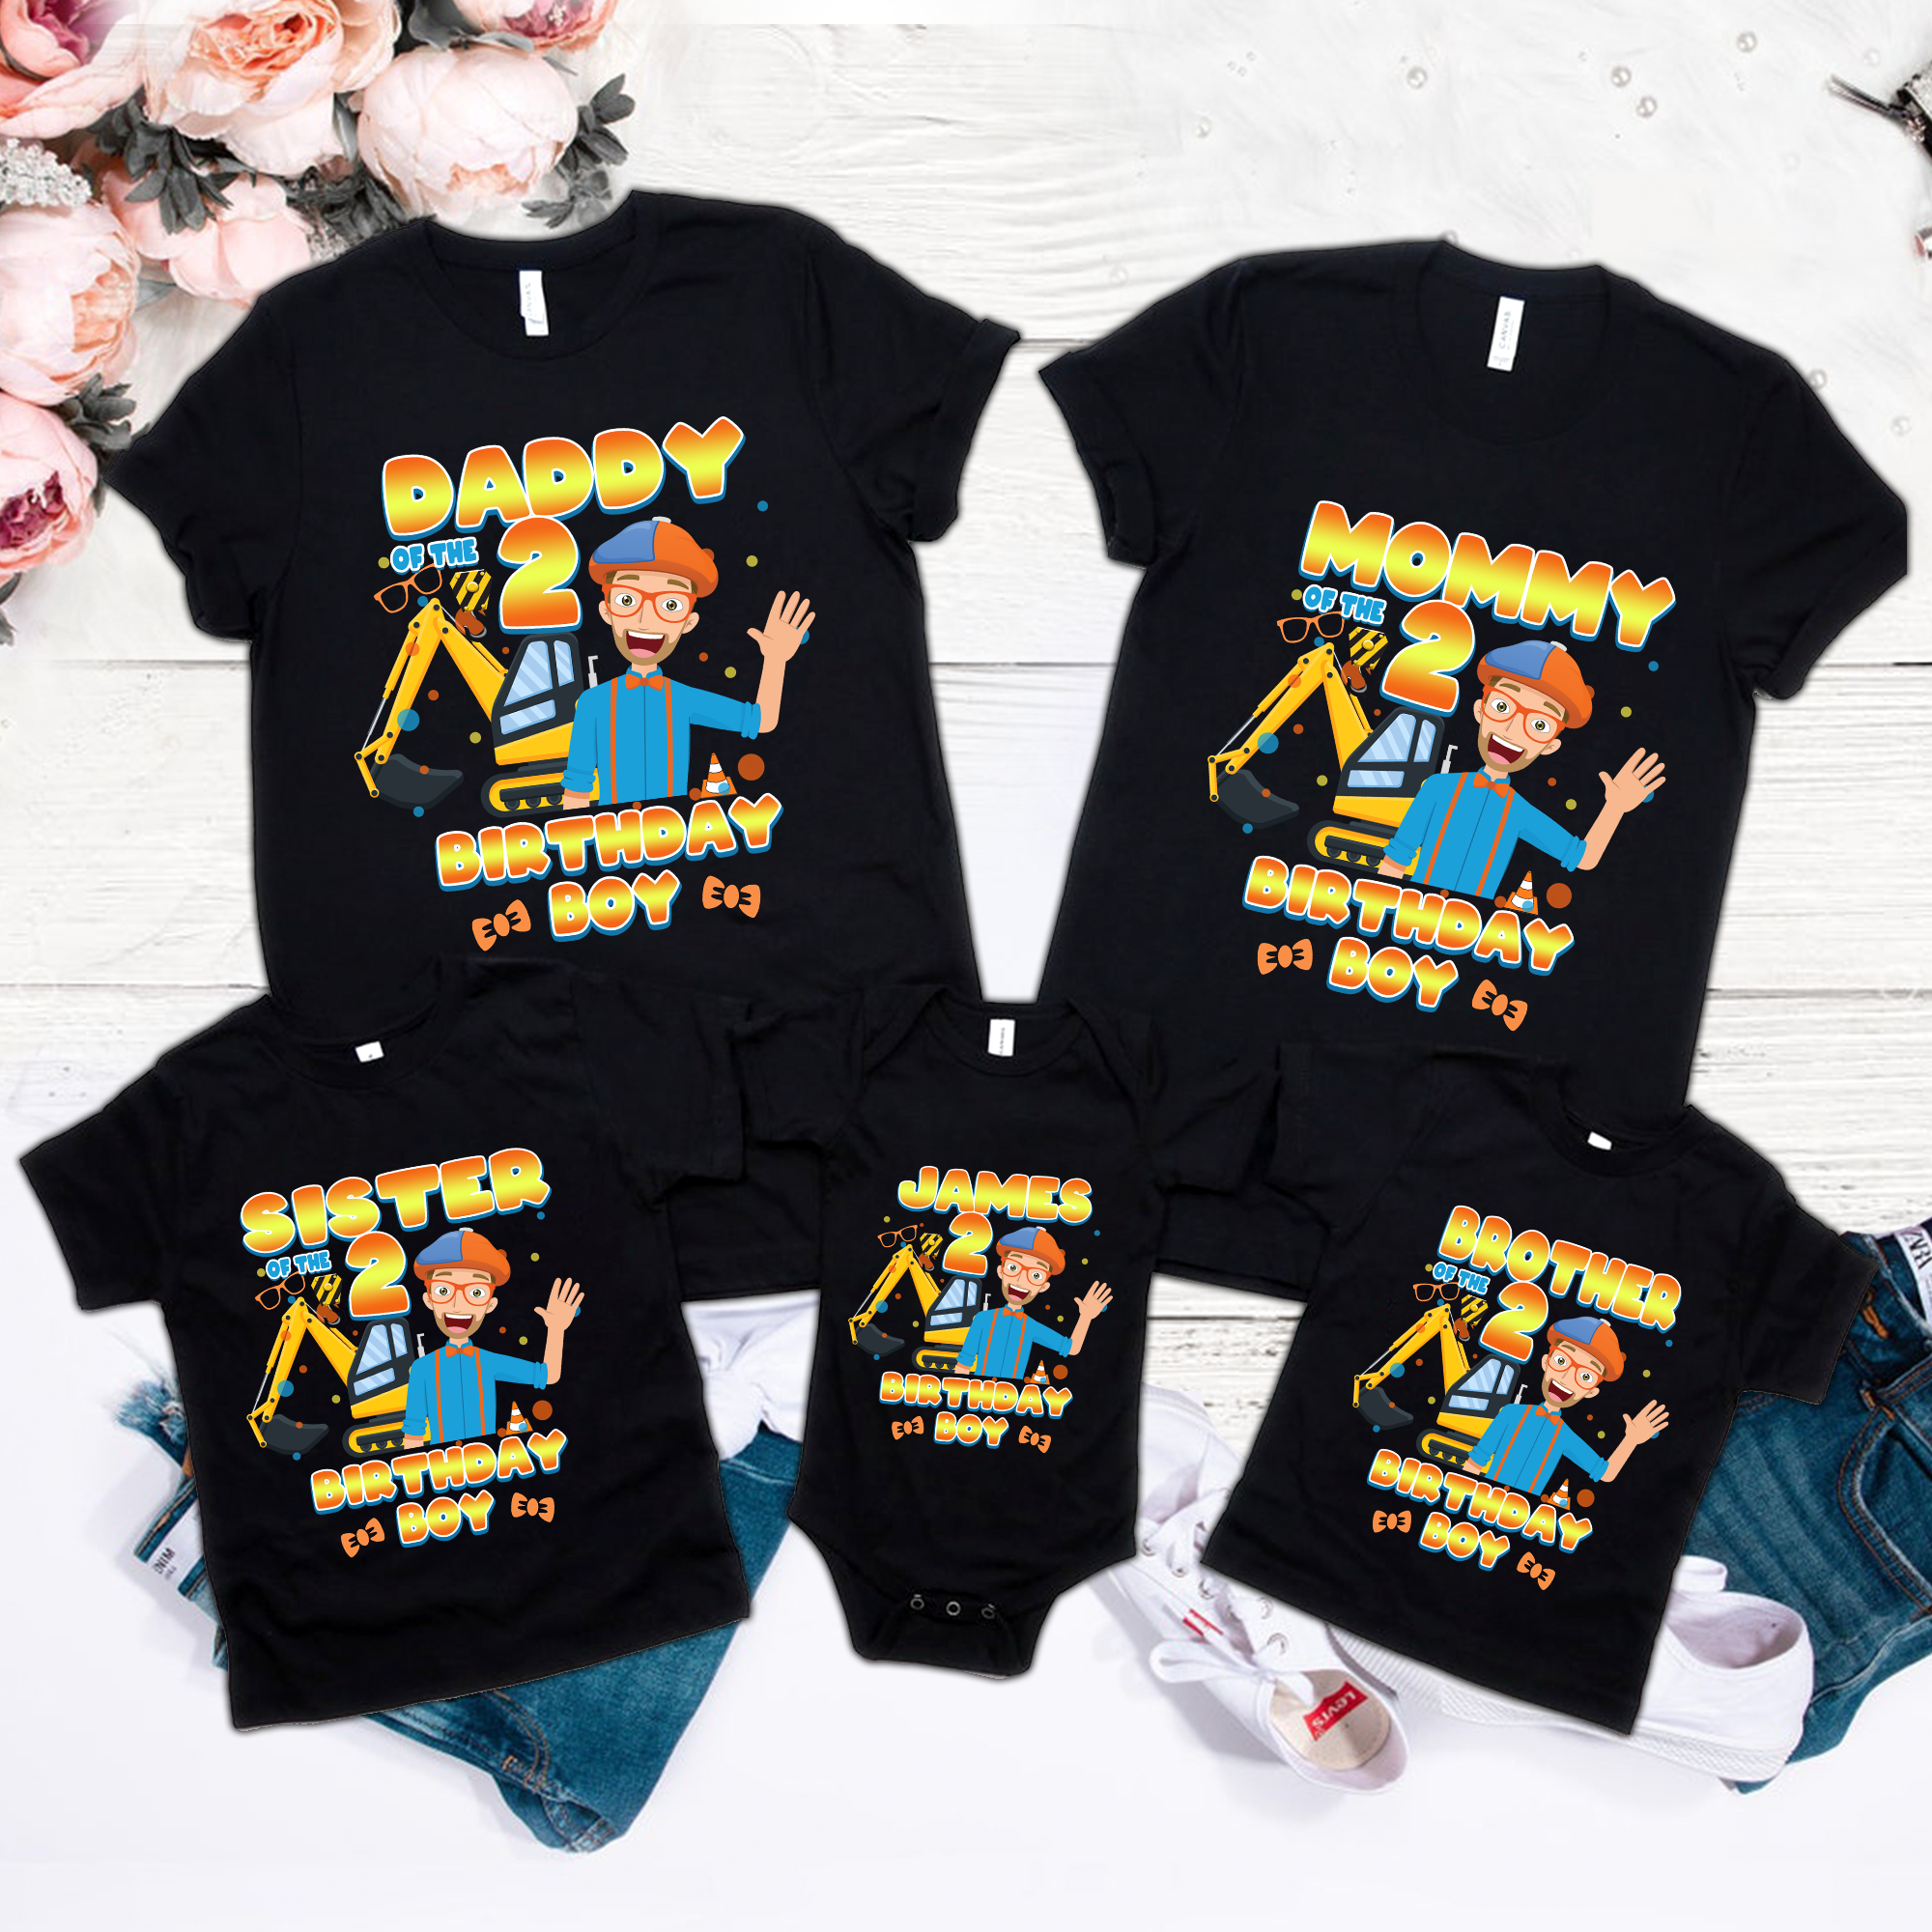 Personalized Blippi Birthday Boy Shirt, Blippi Blippi Family Matching Shirt, Blippi Birthday Party, Blippi Theme Birthday BoyGirl Shirt